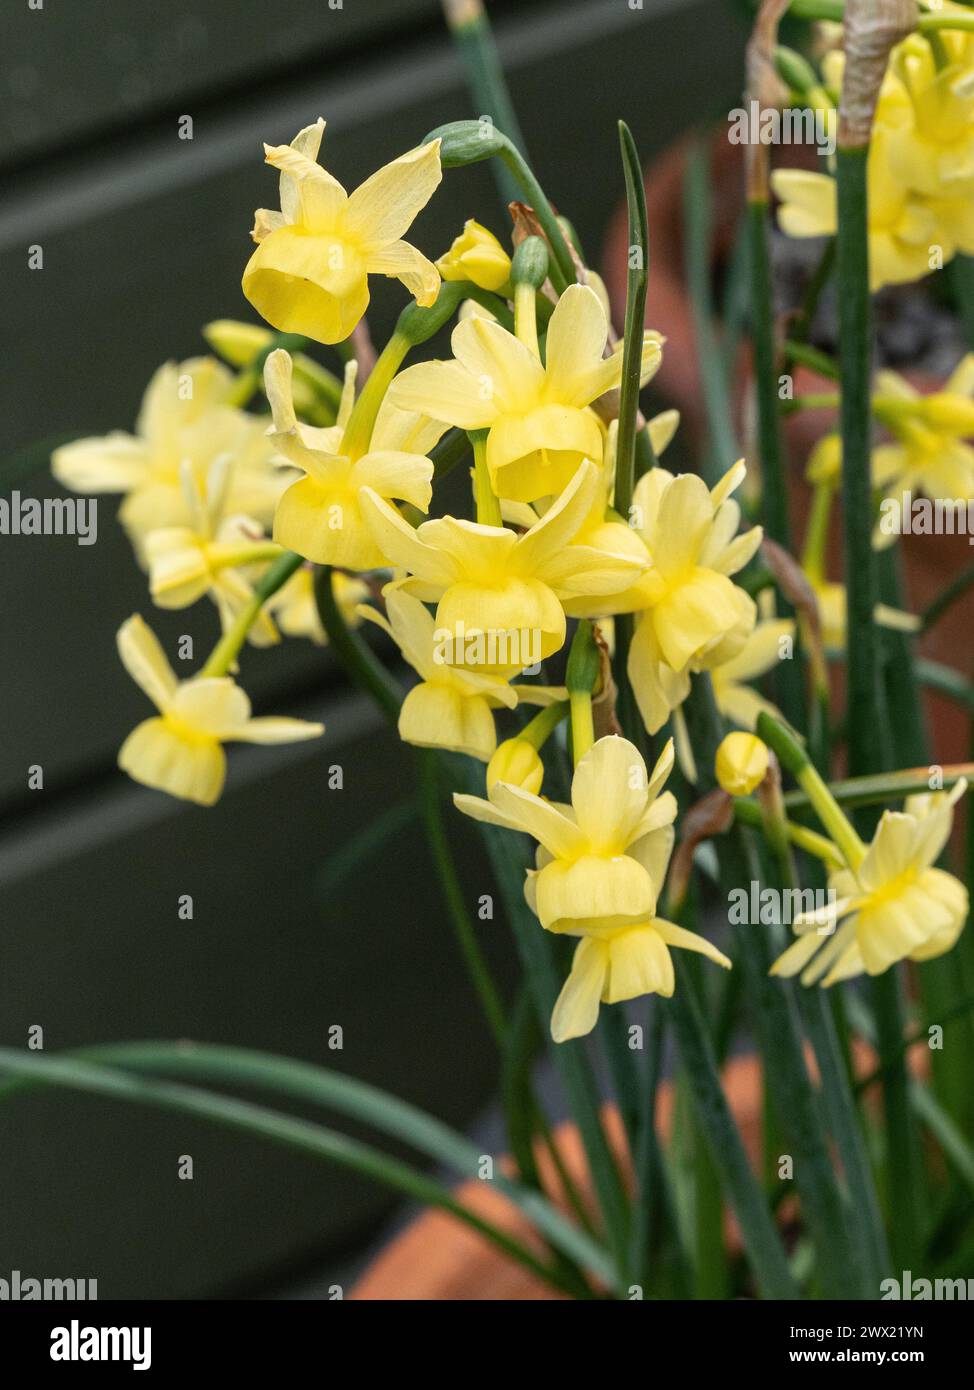 Gros plan sur les délicates fleurs jaune pâle de la jonquille miniature Narcisse 'Angels Wings' Banque D'Images